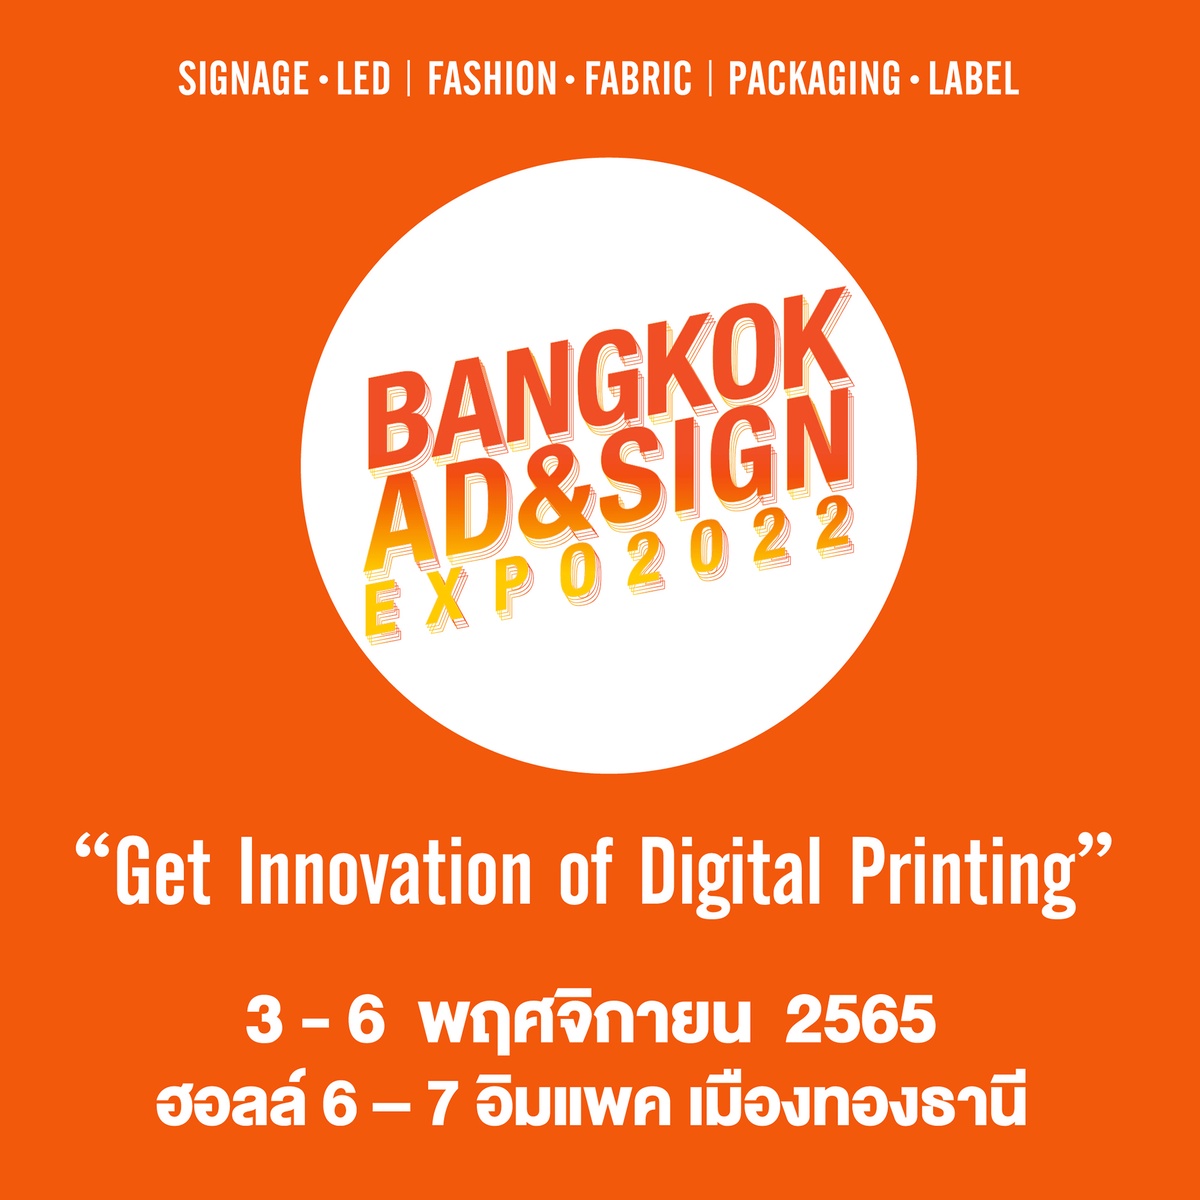 BANGKOK AD SIGN EXPO 2022 งานใหญ่แห่งปี! ครบเครื่องเรื่องนวัตกรรมการผลิตงานป้าย สื่อโฆษณา และดิจิทัลพริ้นท์ติ้ง 3-6 พฤศจิกายนนี้ ที่อิมแพ็ค